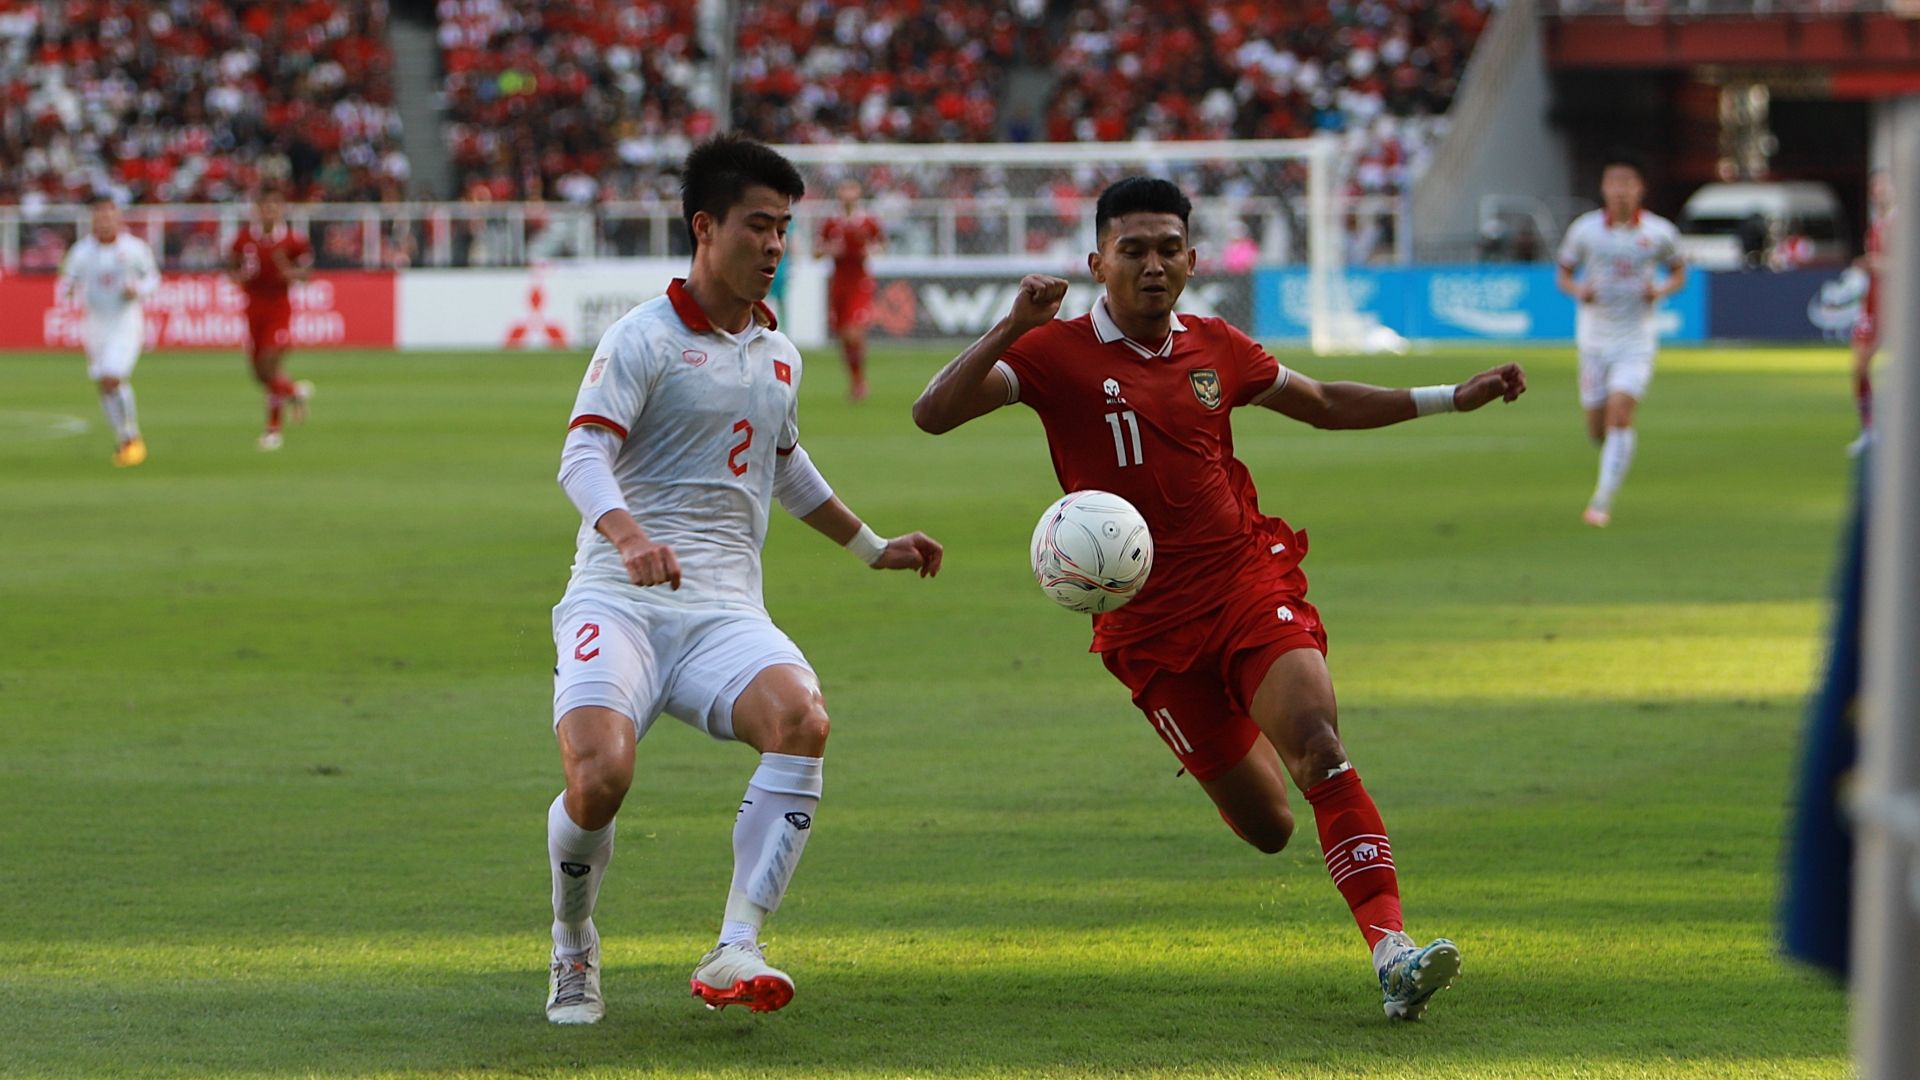 Indonesia vs vietnam 2024